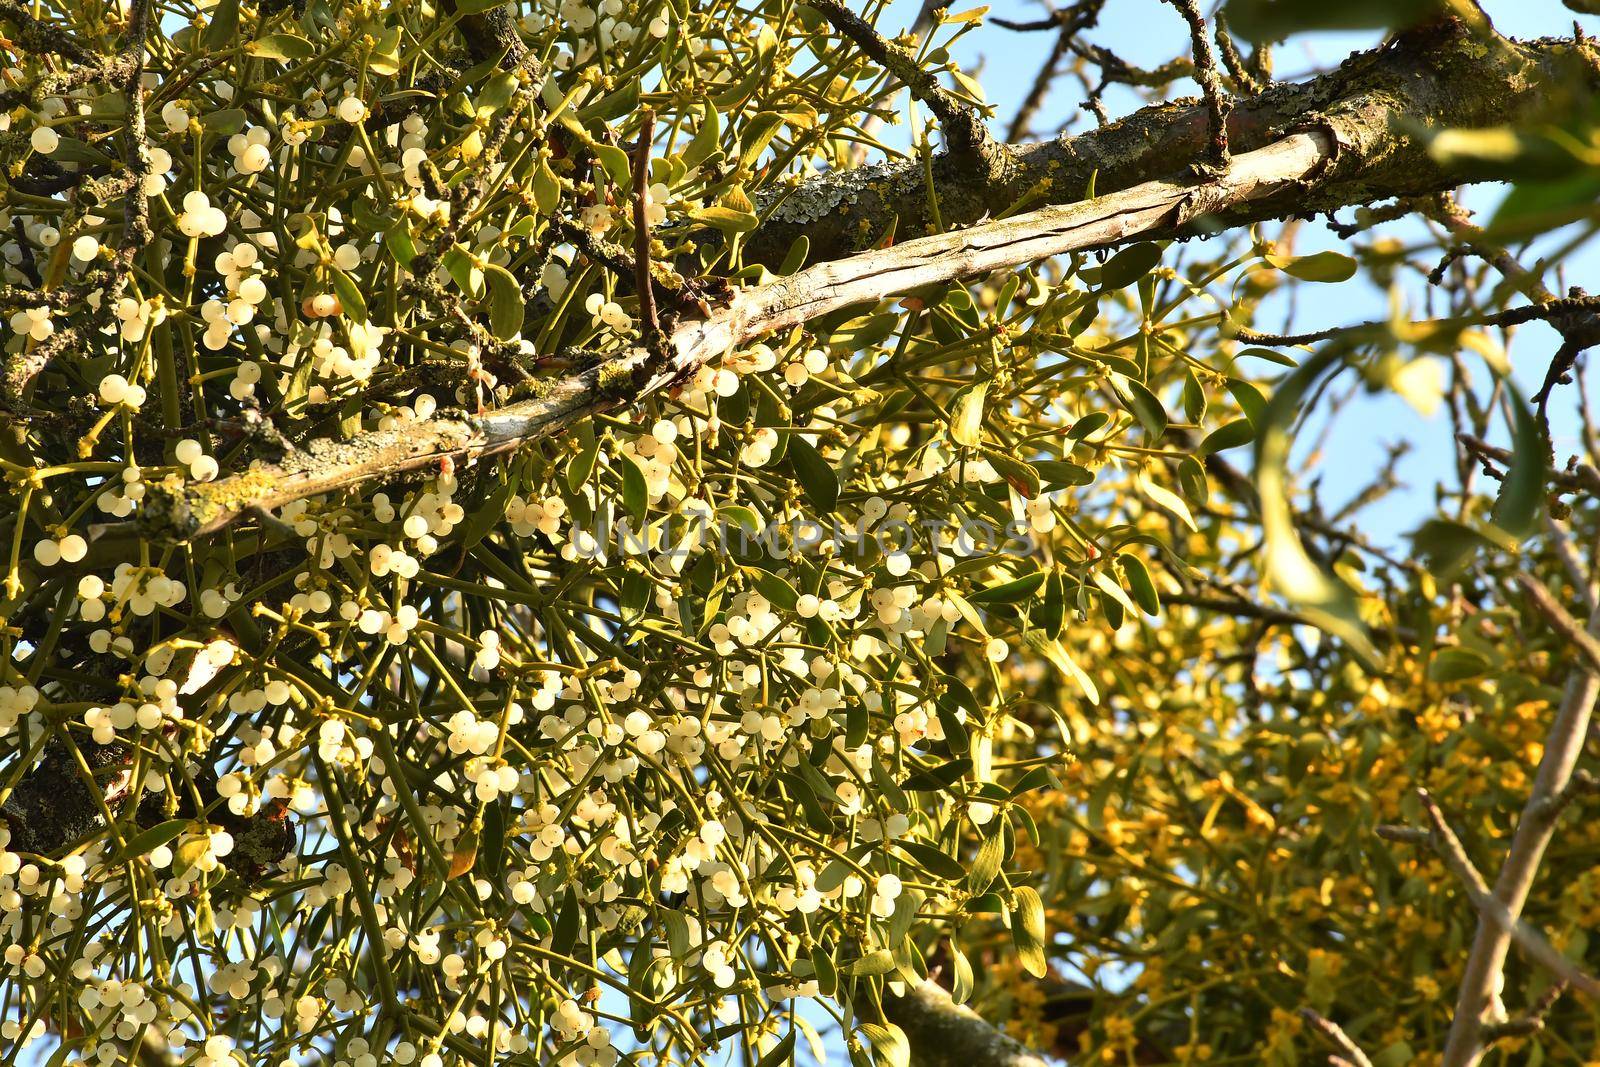 mistletoe in a fruit tree in wintertime with ripe berries